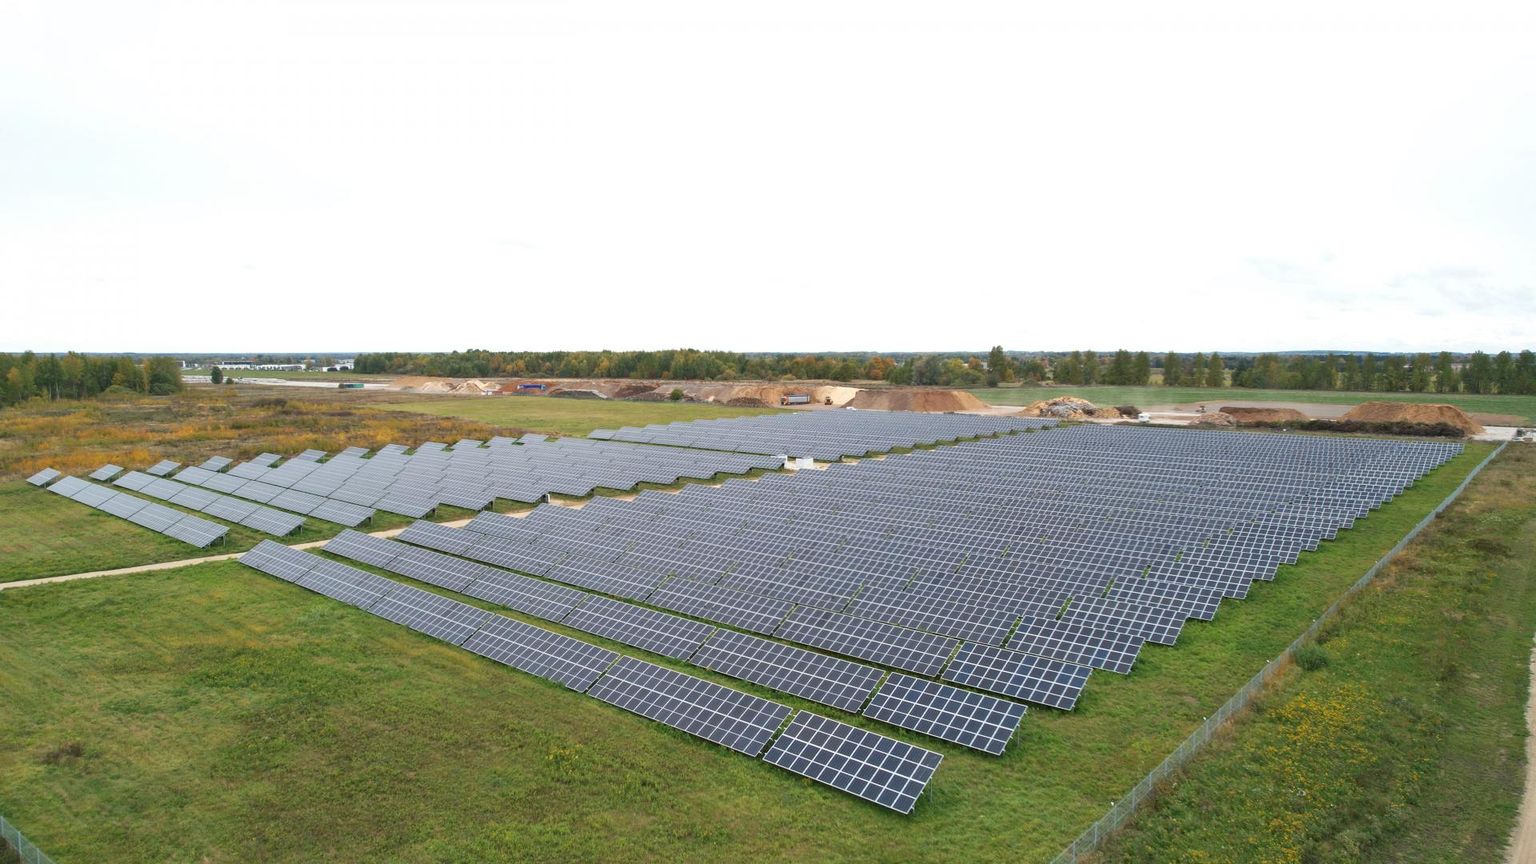 Raadil lennuraja kõrval asuv 2,4-megavatine päikesepark hakkas tööle aprillis. Omanikel on kava rajada samale kohale 6,1-megavatine päikesepark.